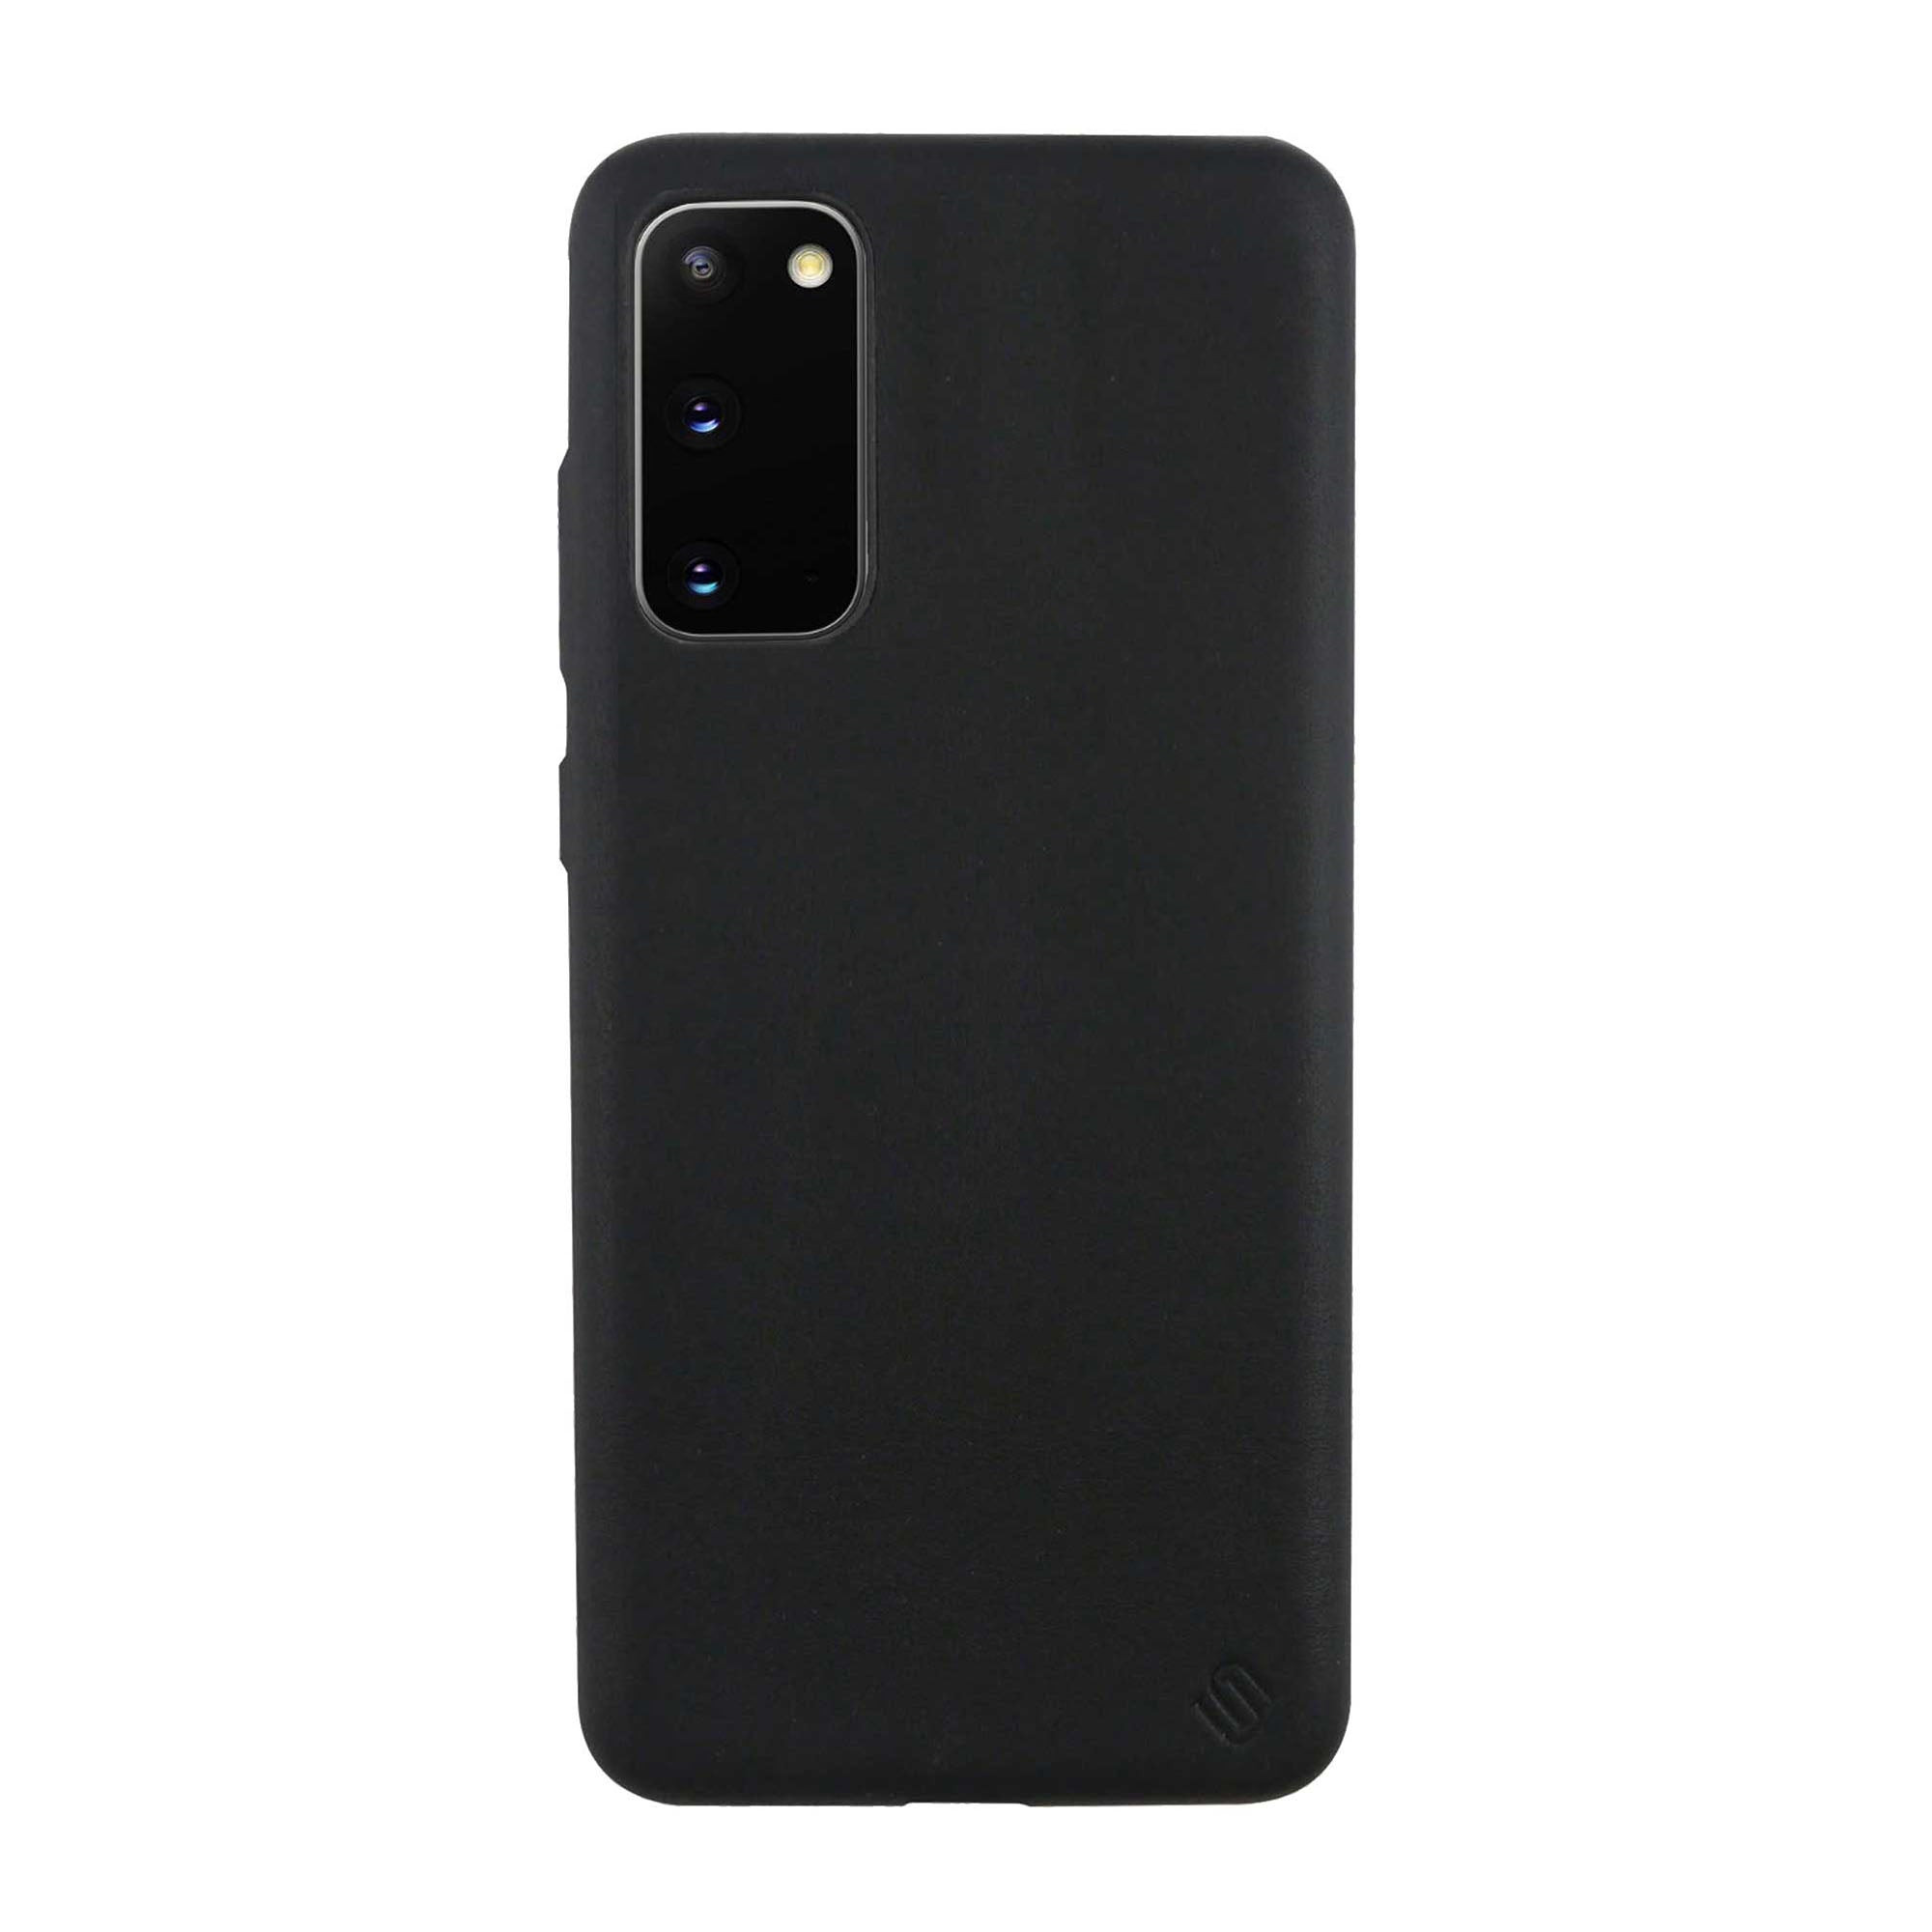 Samsung Galaxy S20 5G Uunique Black (Black Olive) Nutrisiti Eco Back Case - 15-06636